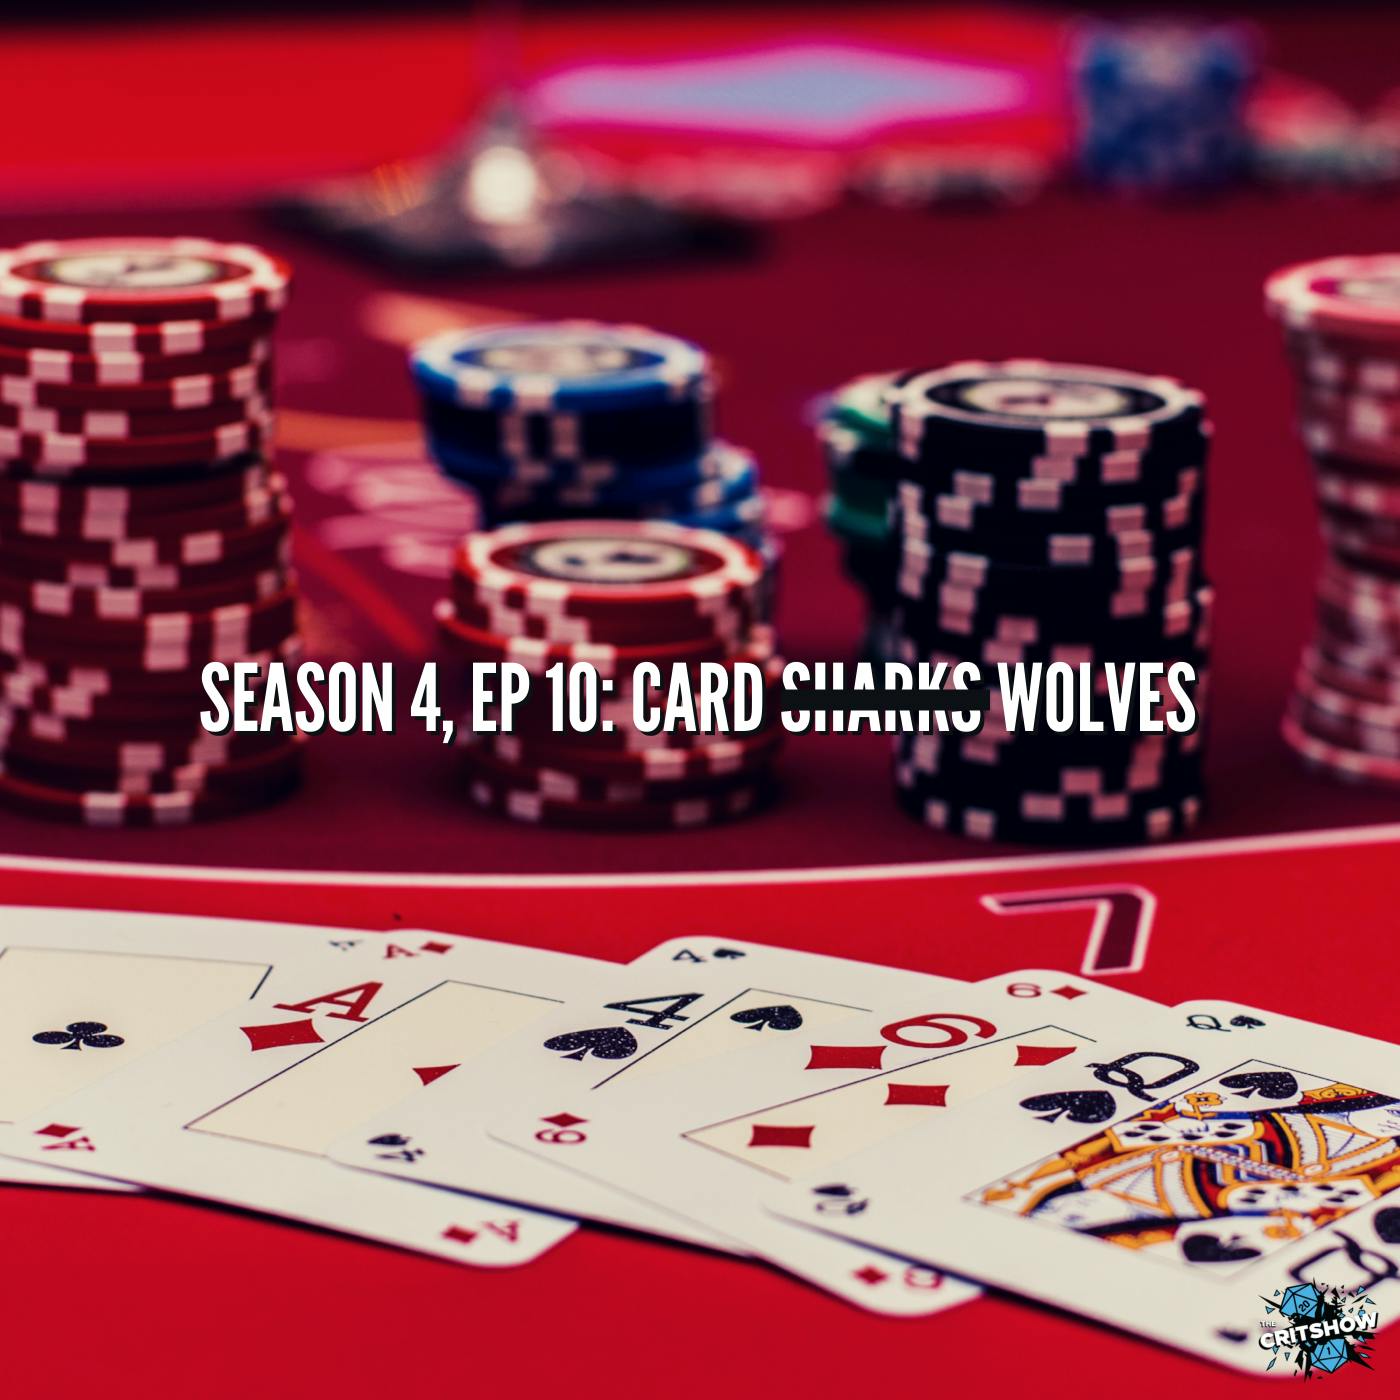 Card Sharks Wolves (S4,E10)